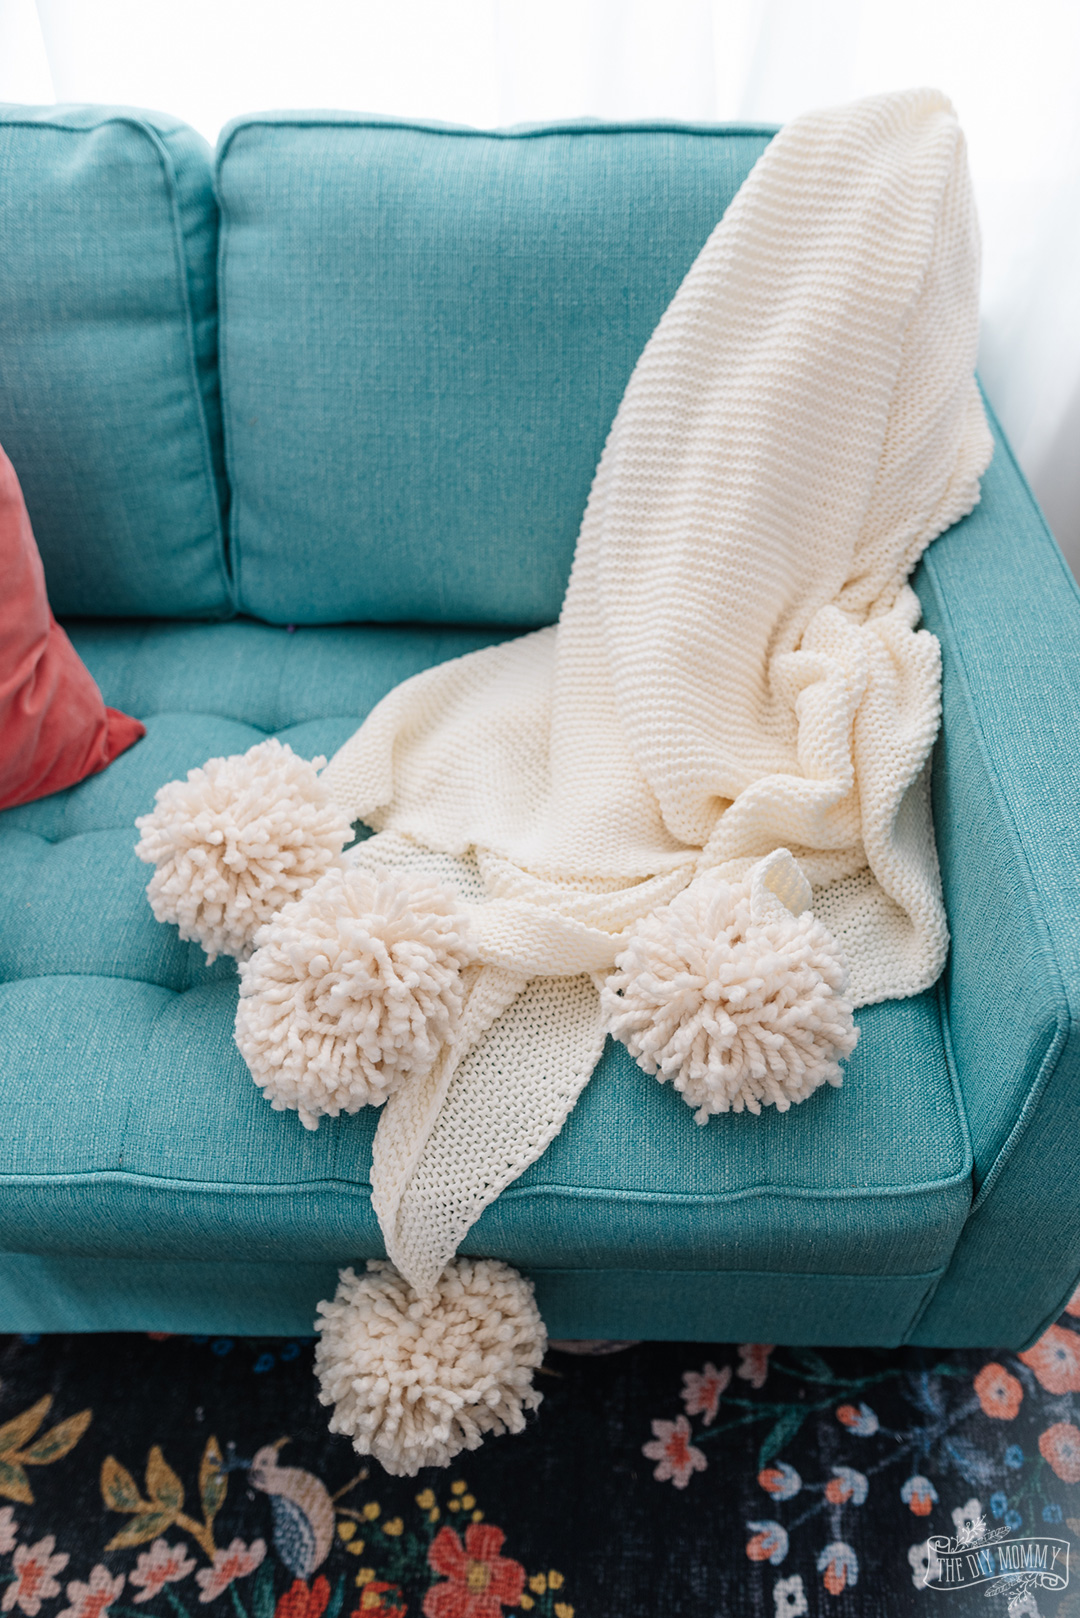 IKEA Hack : Make a cozy pom pom throw blanket